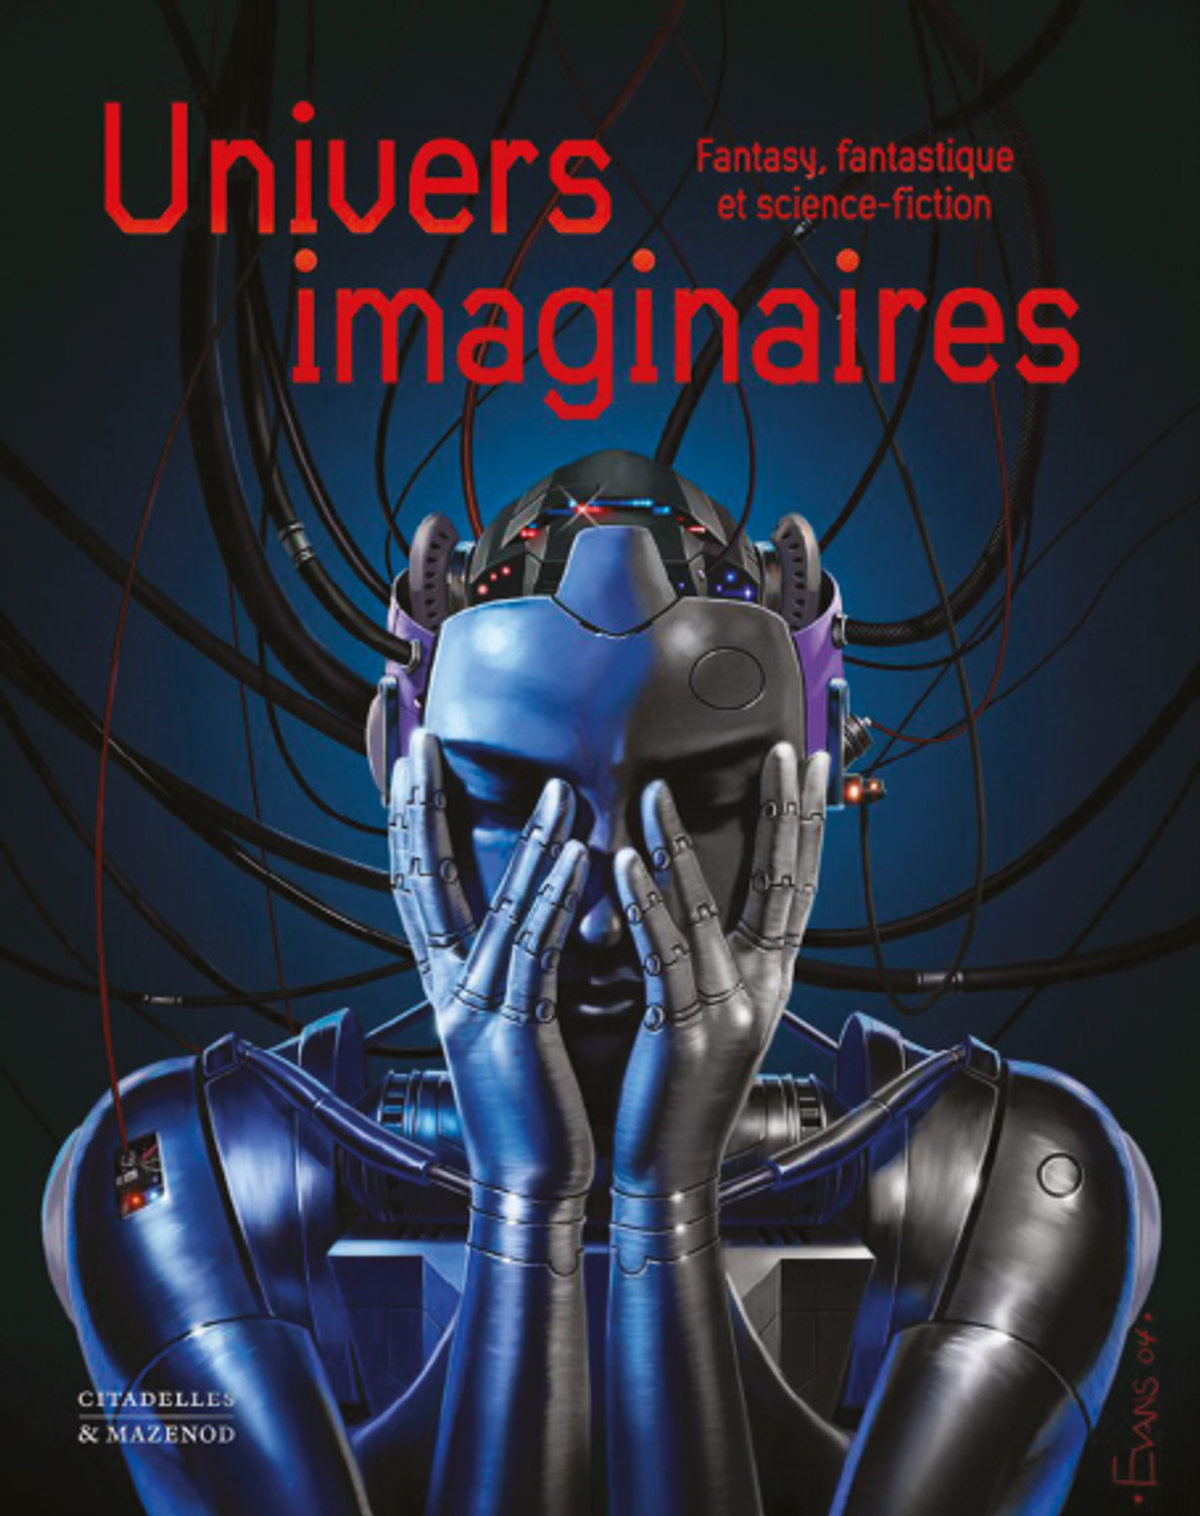 Laurent Martin, Univers imaginaires. Fantasy, fantastique et science-fiction, Paris, Citadelles & Mazenod, 2022, 500 pages, 300 illustrations couleur, 199 euros.